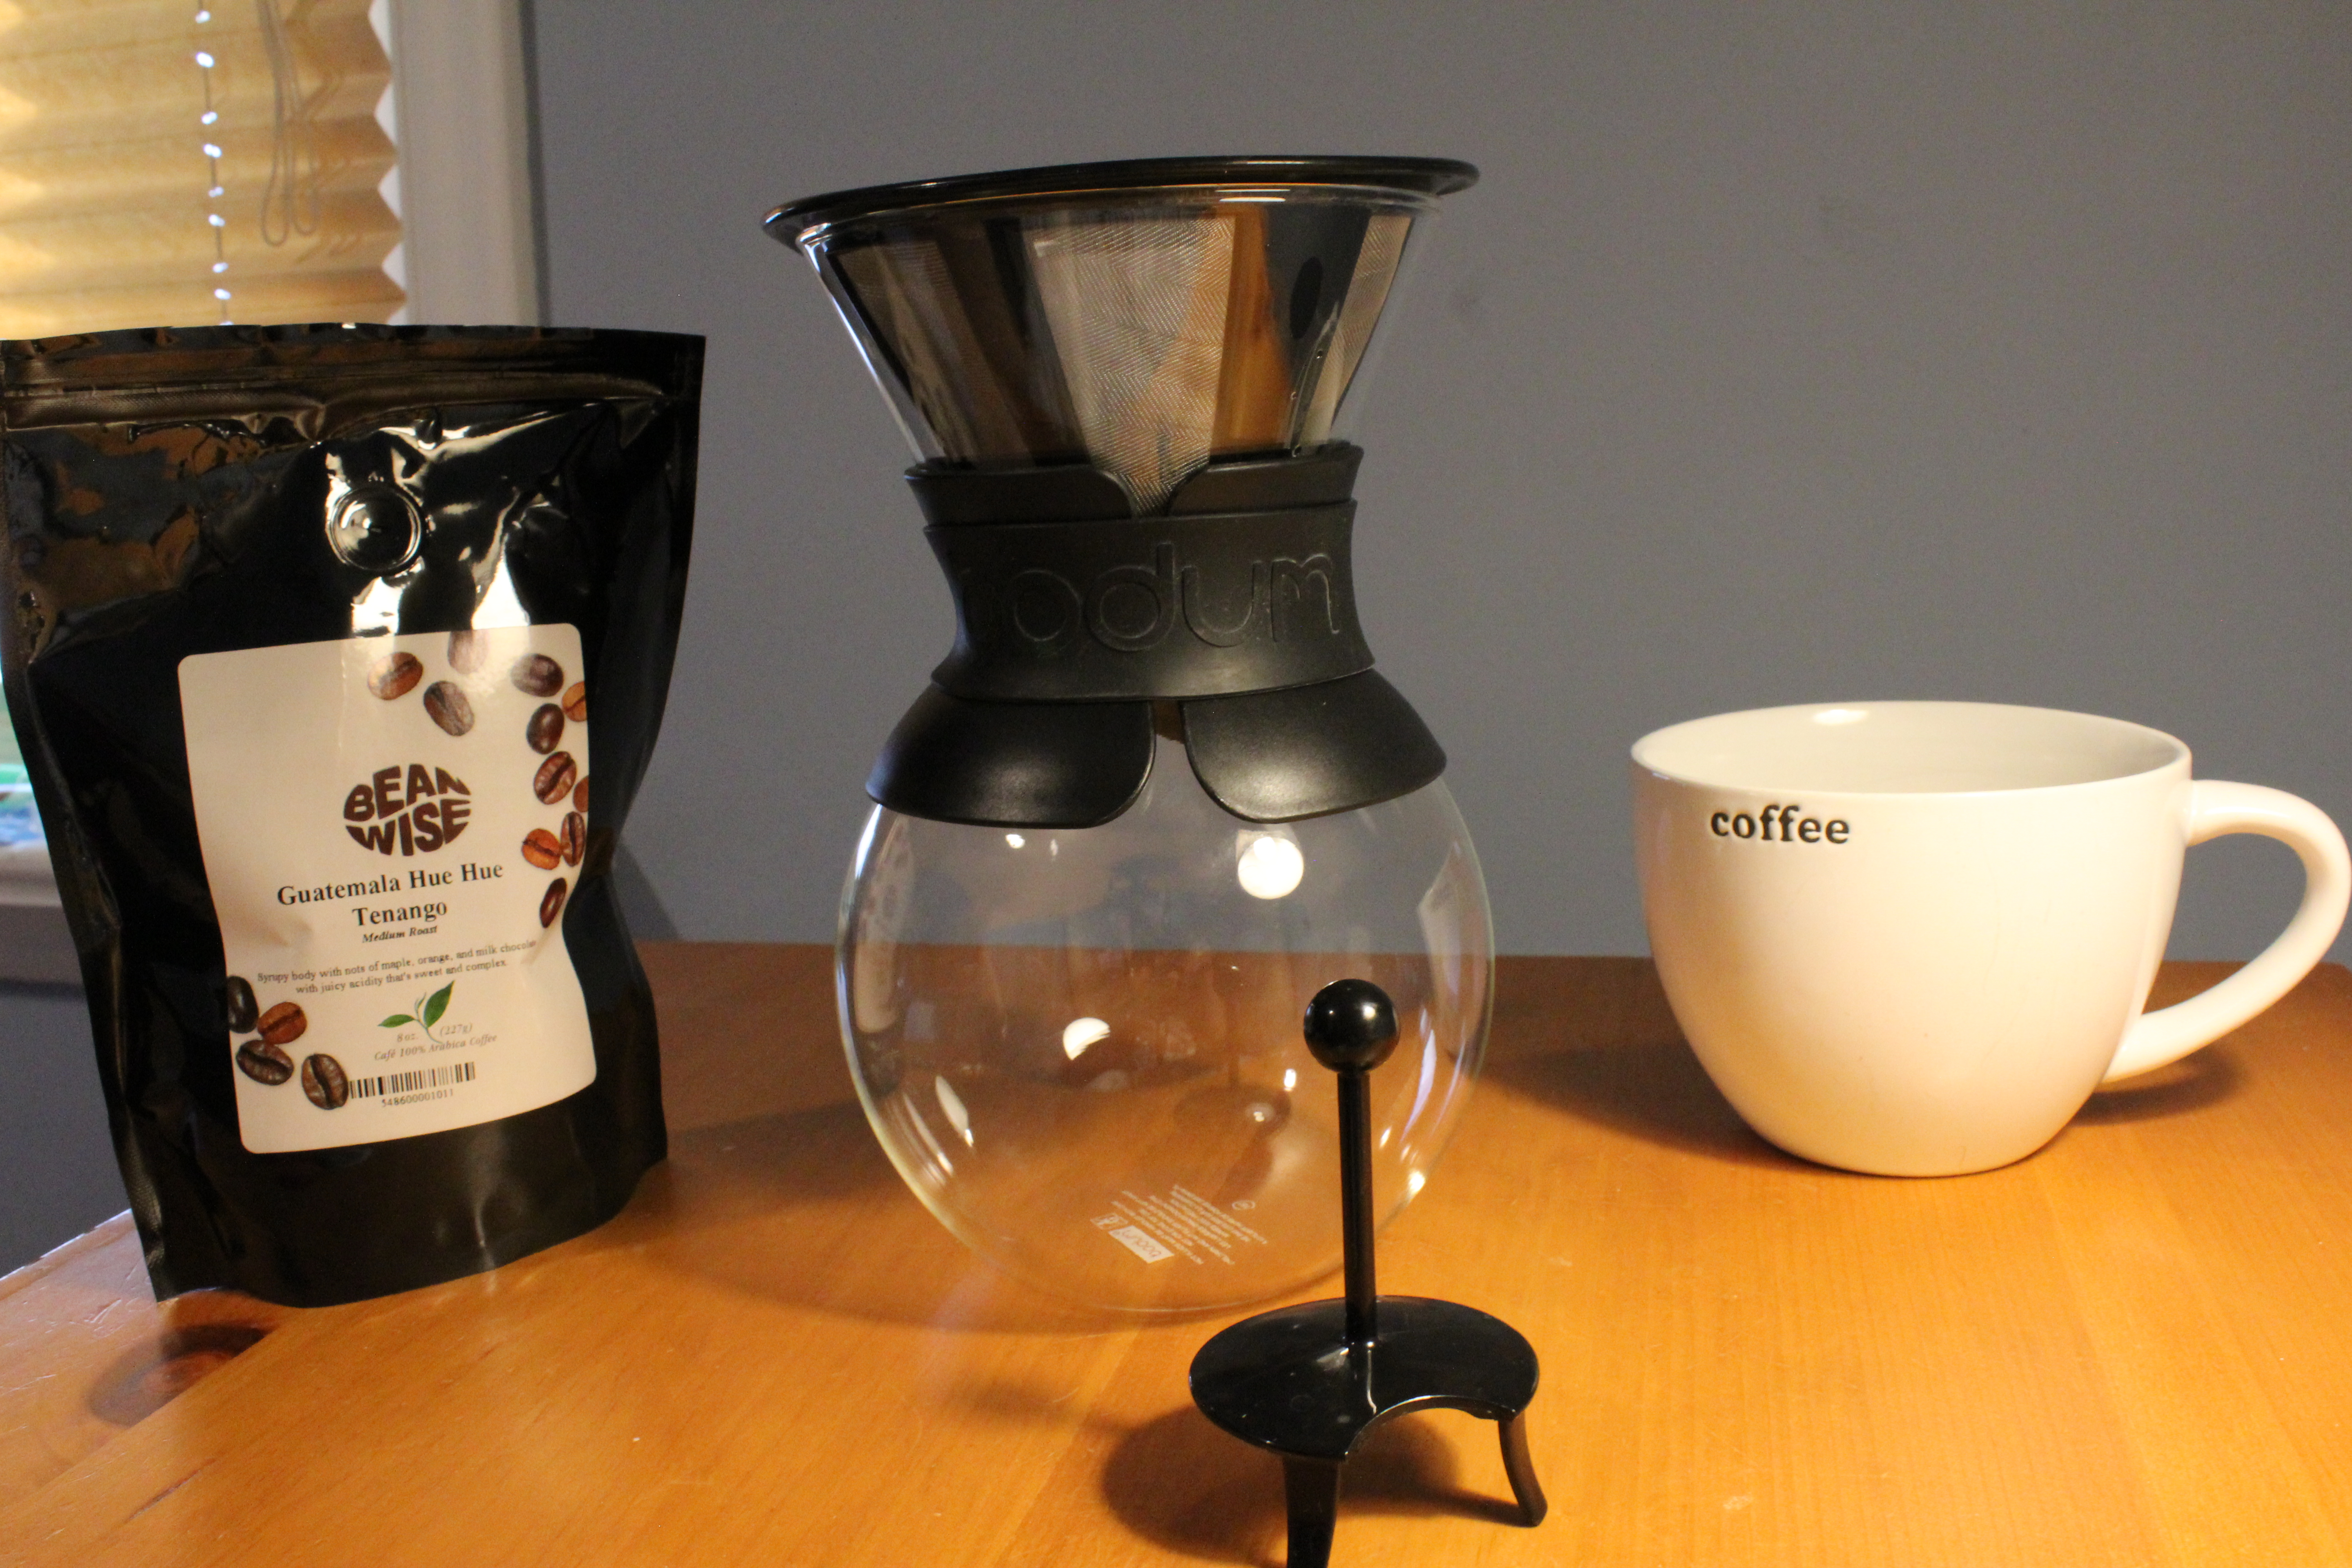 Bodum Glass Pour-Over Coffee Maker + Reviews